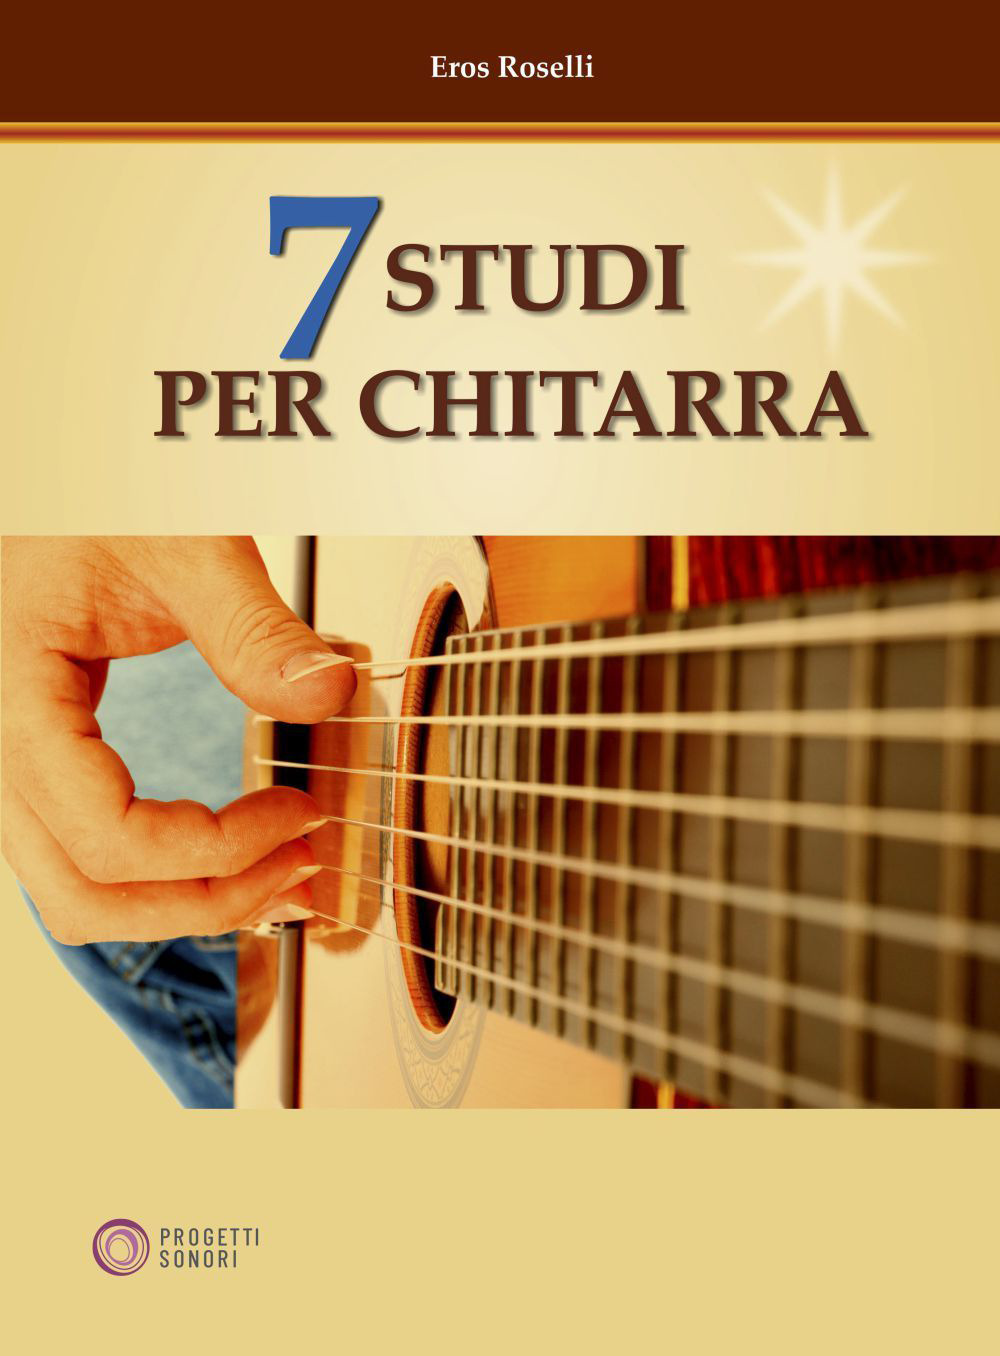 7 studi per chitarra